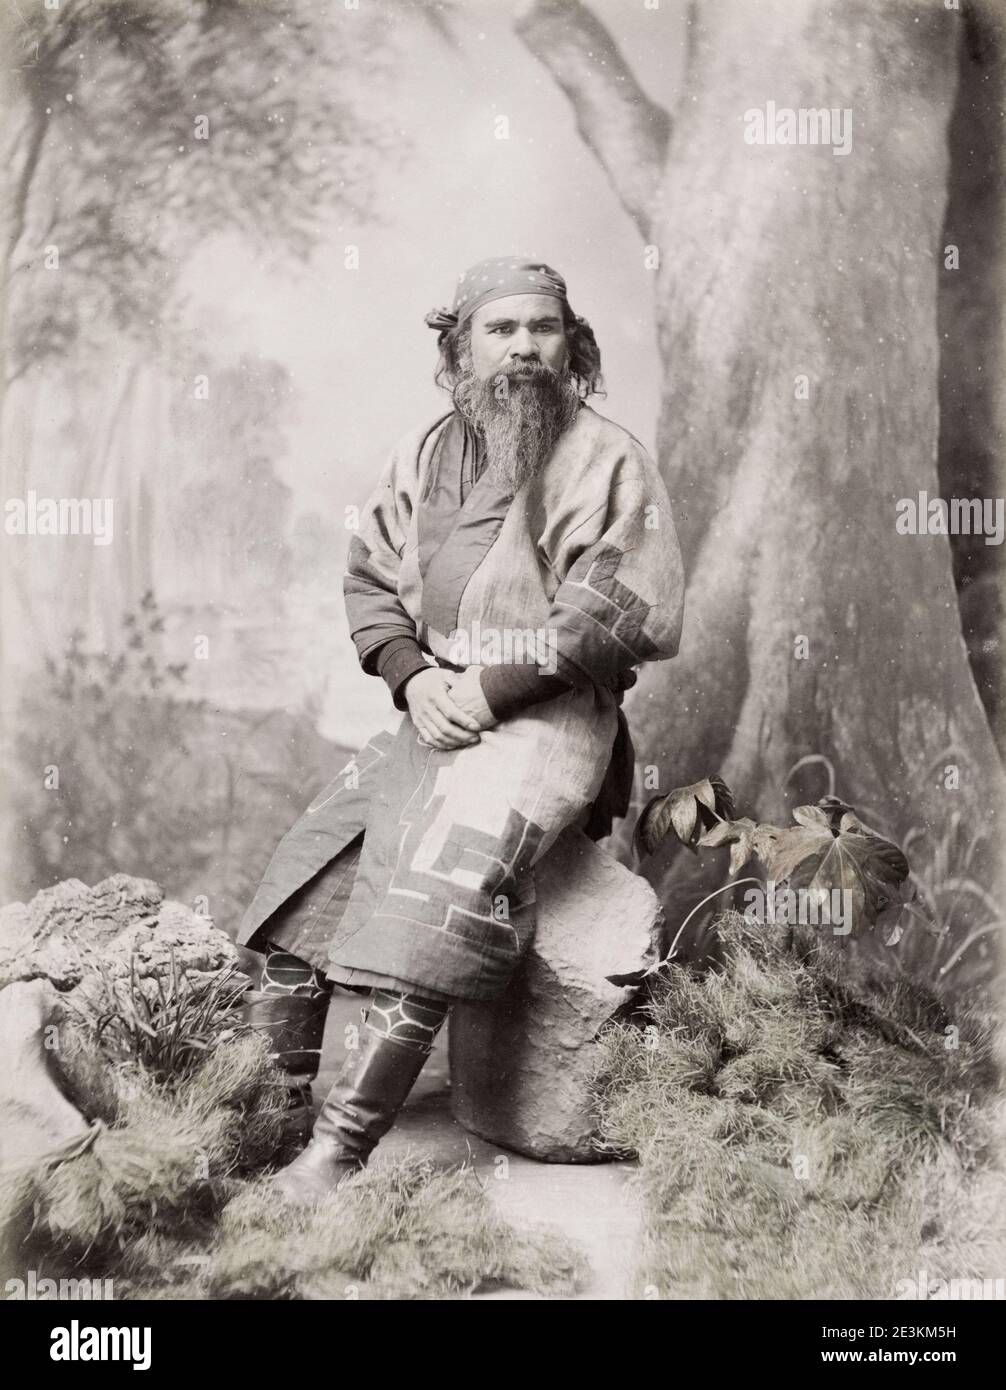 Vintage 19th century photograph: Ainu, Aino man from Haokkaido island, Japan. Stock Photo